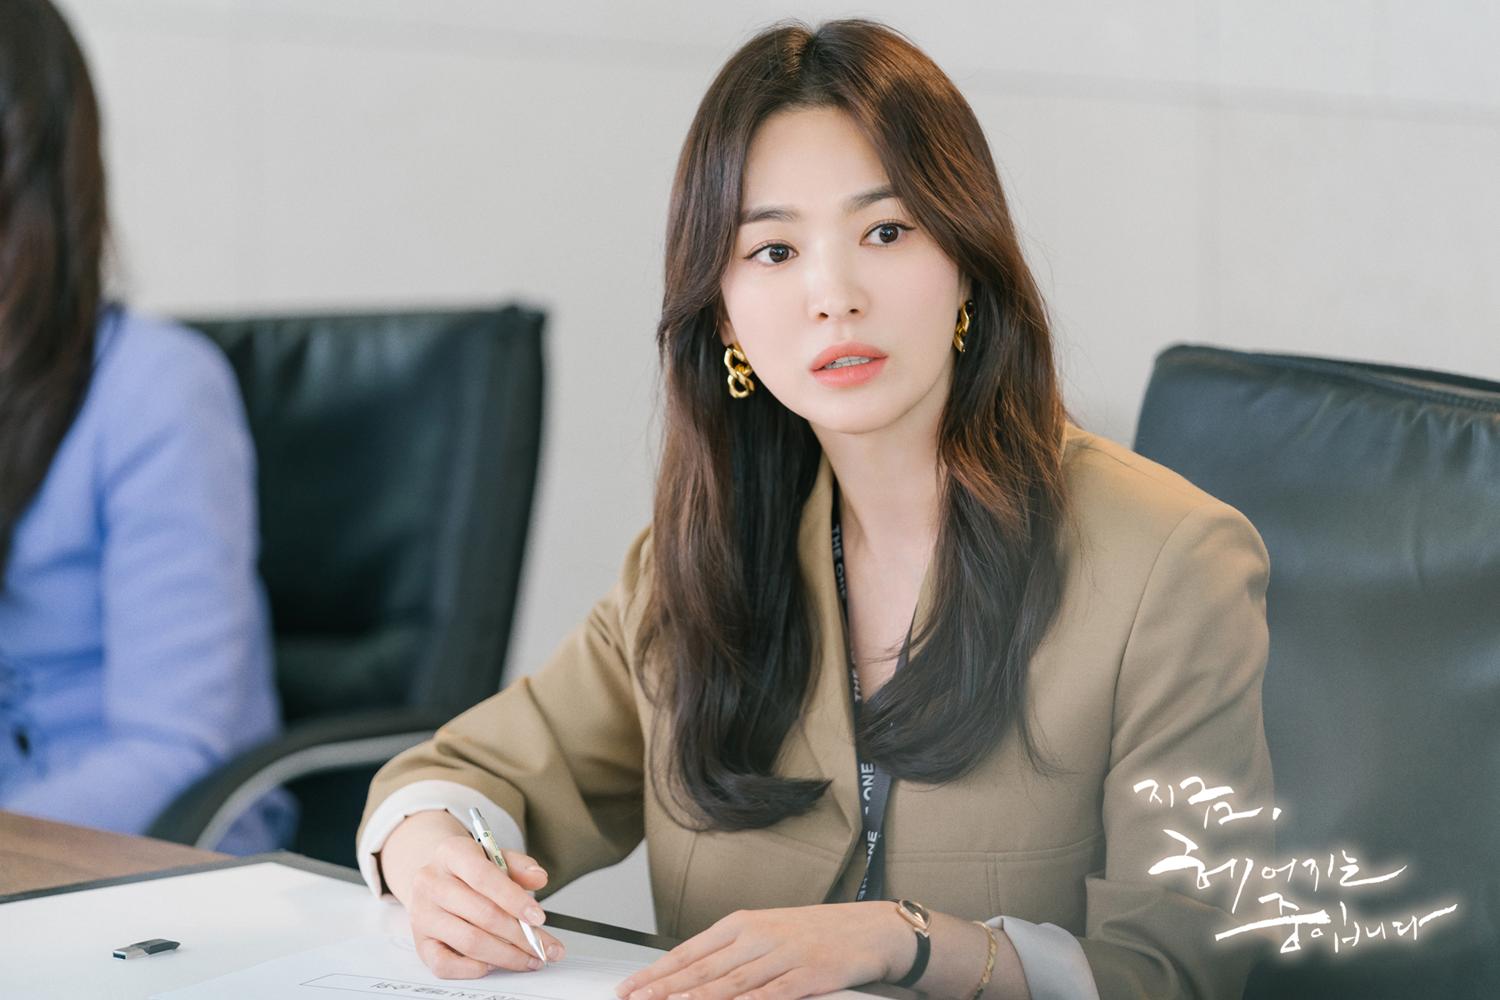 'Visual' xưa - nay của 4 mỹ nhân hàng đầu màn ảnh Hàn Quốc quá khứ vs hiện tại: Song Hye Kyo tiều tụy sau ly hôn, Jun Ji Hyun giữ vững nhan sắc 'tường thành' - Ảnh 15